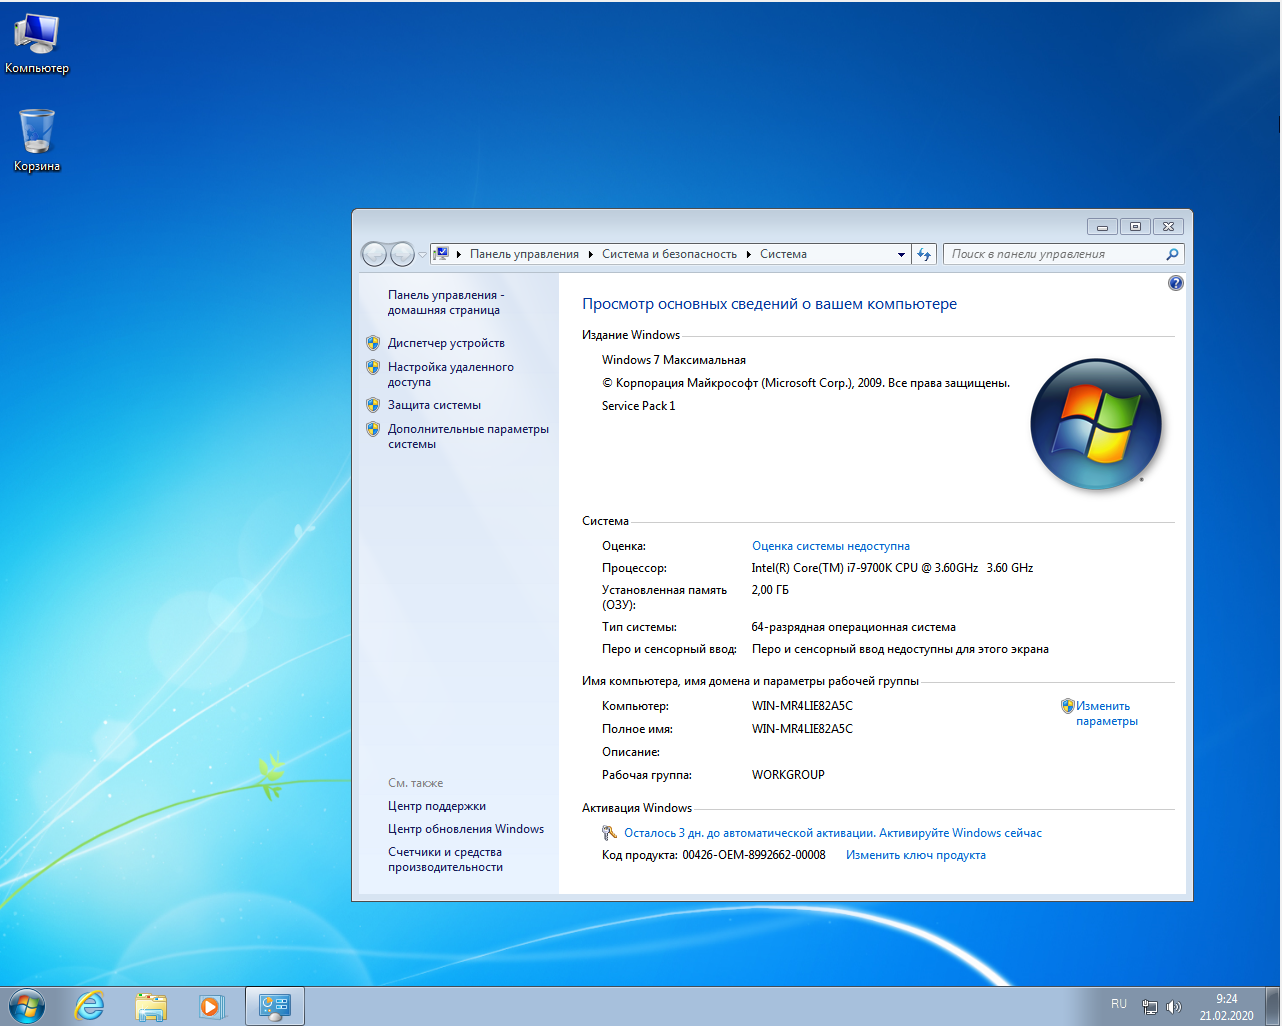 Модель windows 7. 64-Разрядная Операционная система, процессор x64. Windows 7 Ultimate ключ. Виндовс 7 максимальная 64 бит картинки. Самая максимальная винда.